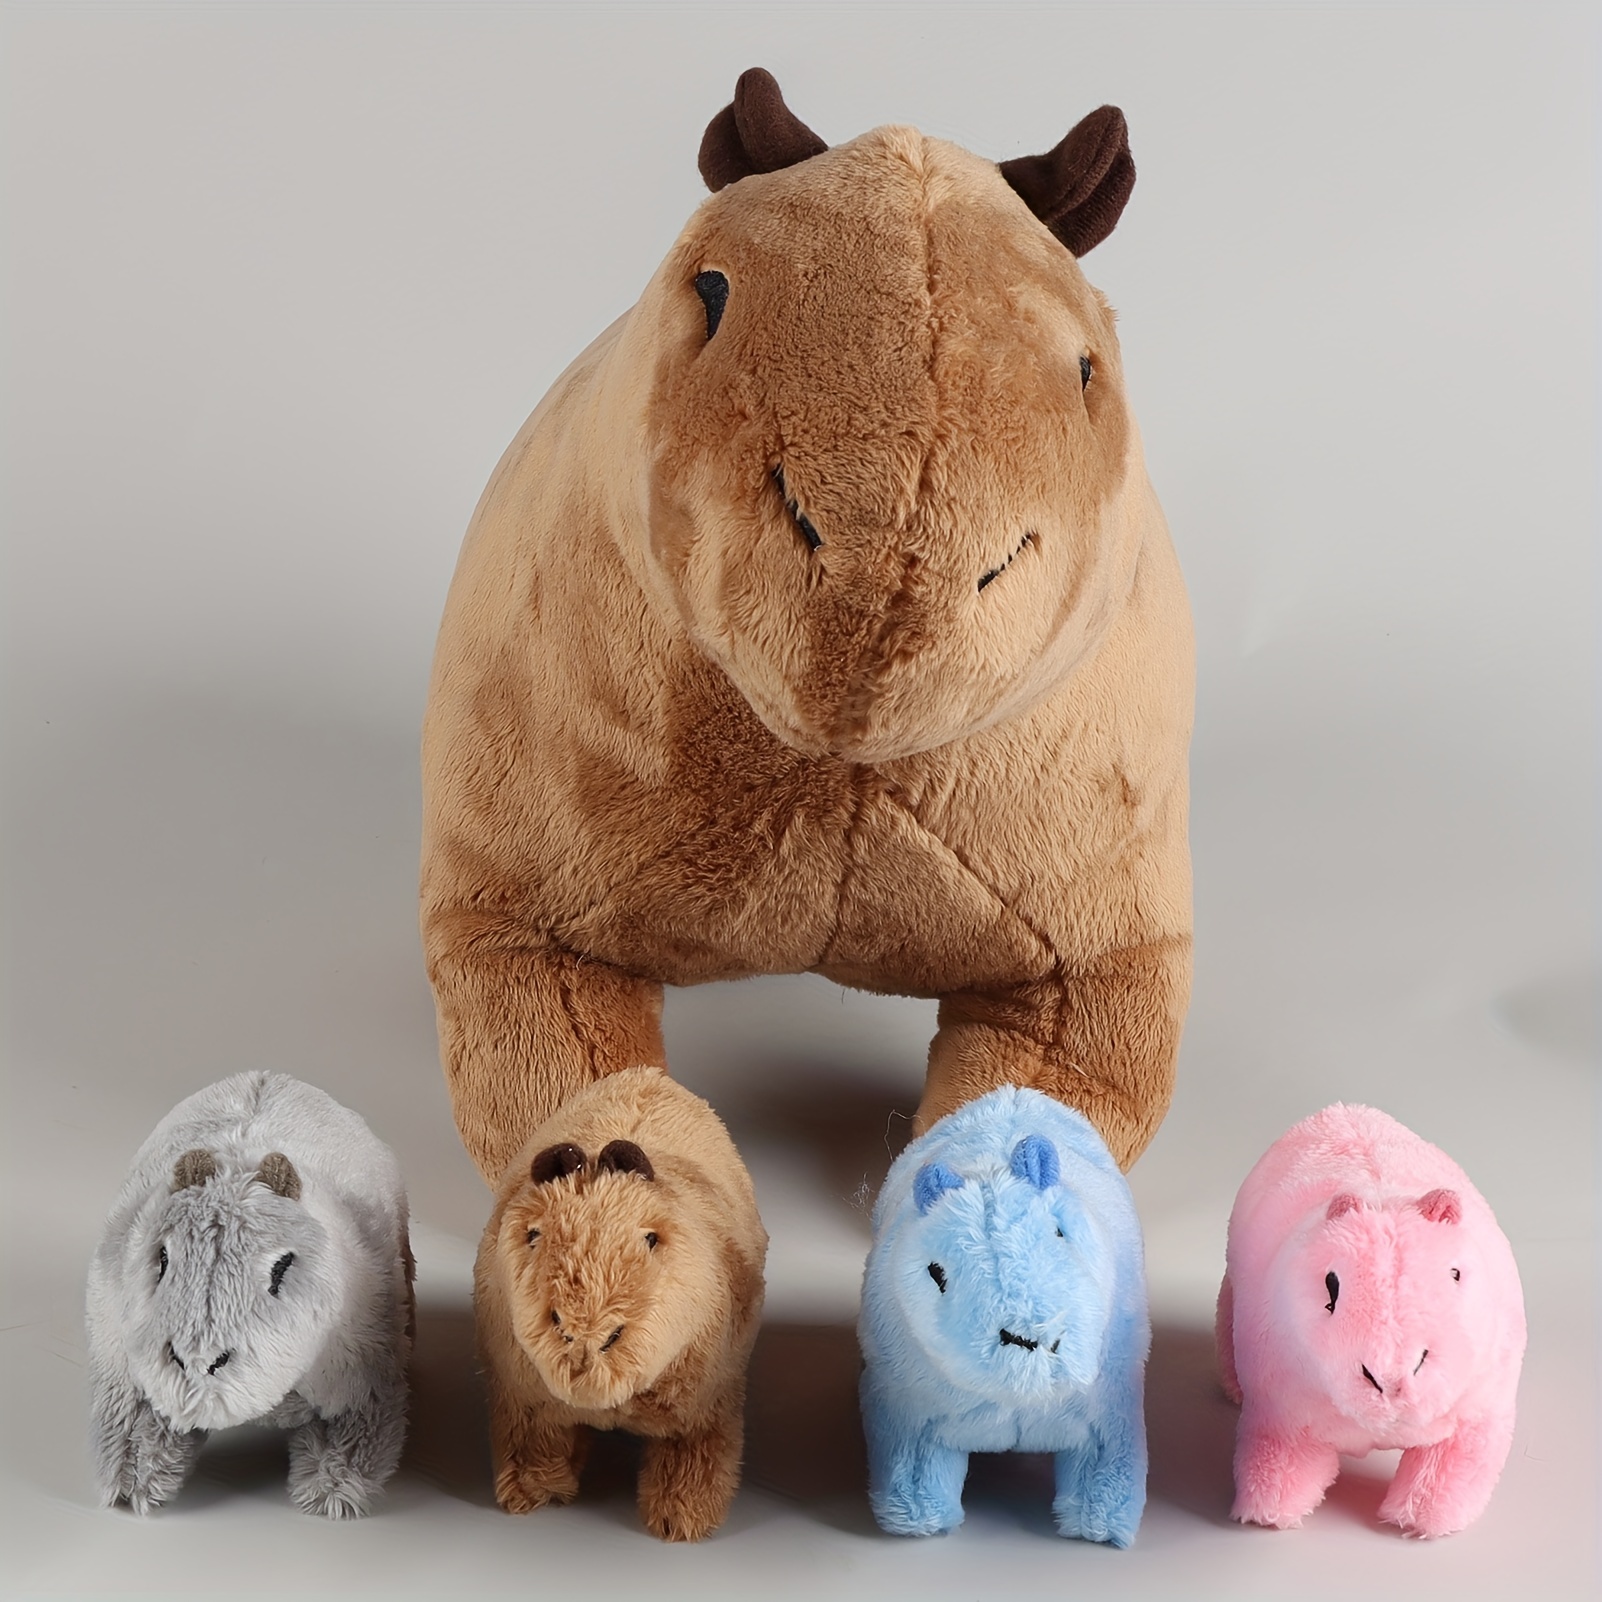 Simulation Capybara Peluche Toy,Rongeur réaliste 13 Capybara Animaux en  peluche,Animaux sauvages doux Ramper Capybara Jouets en peluche Cadeaux  pour les enfants